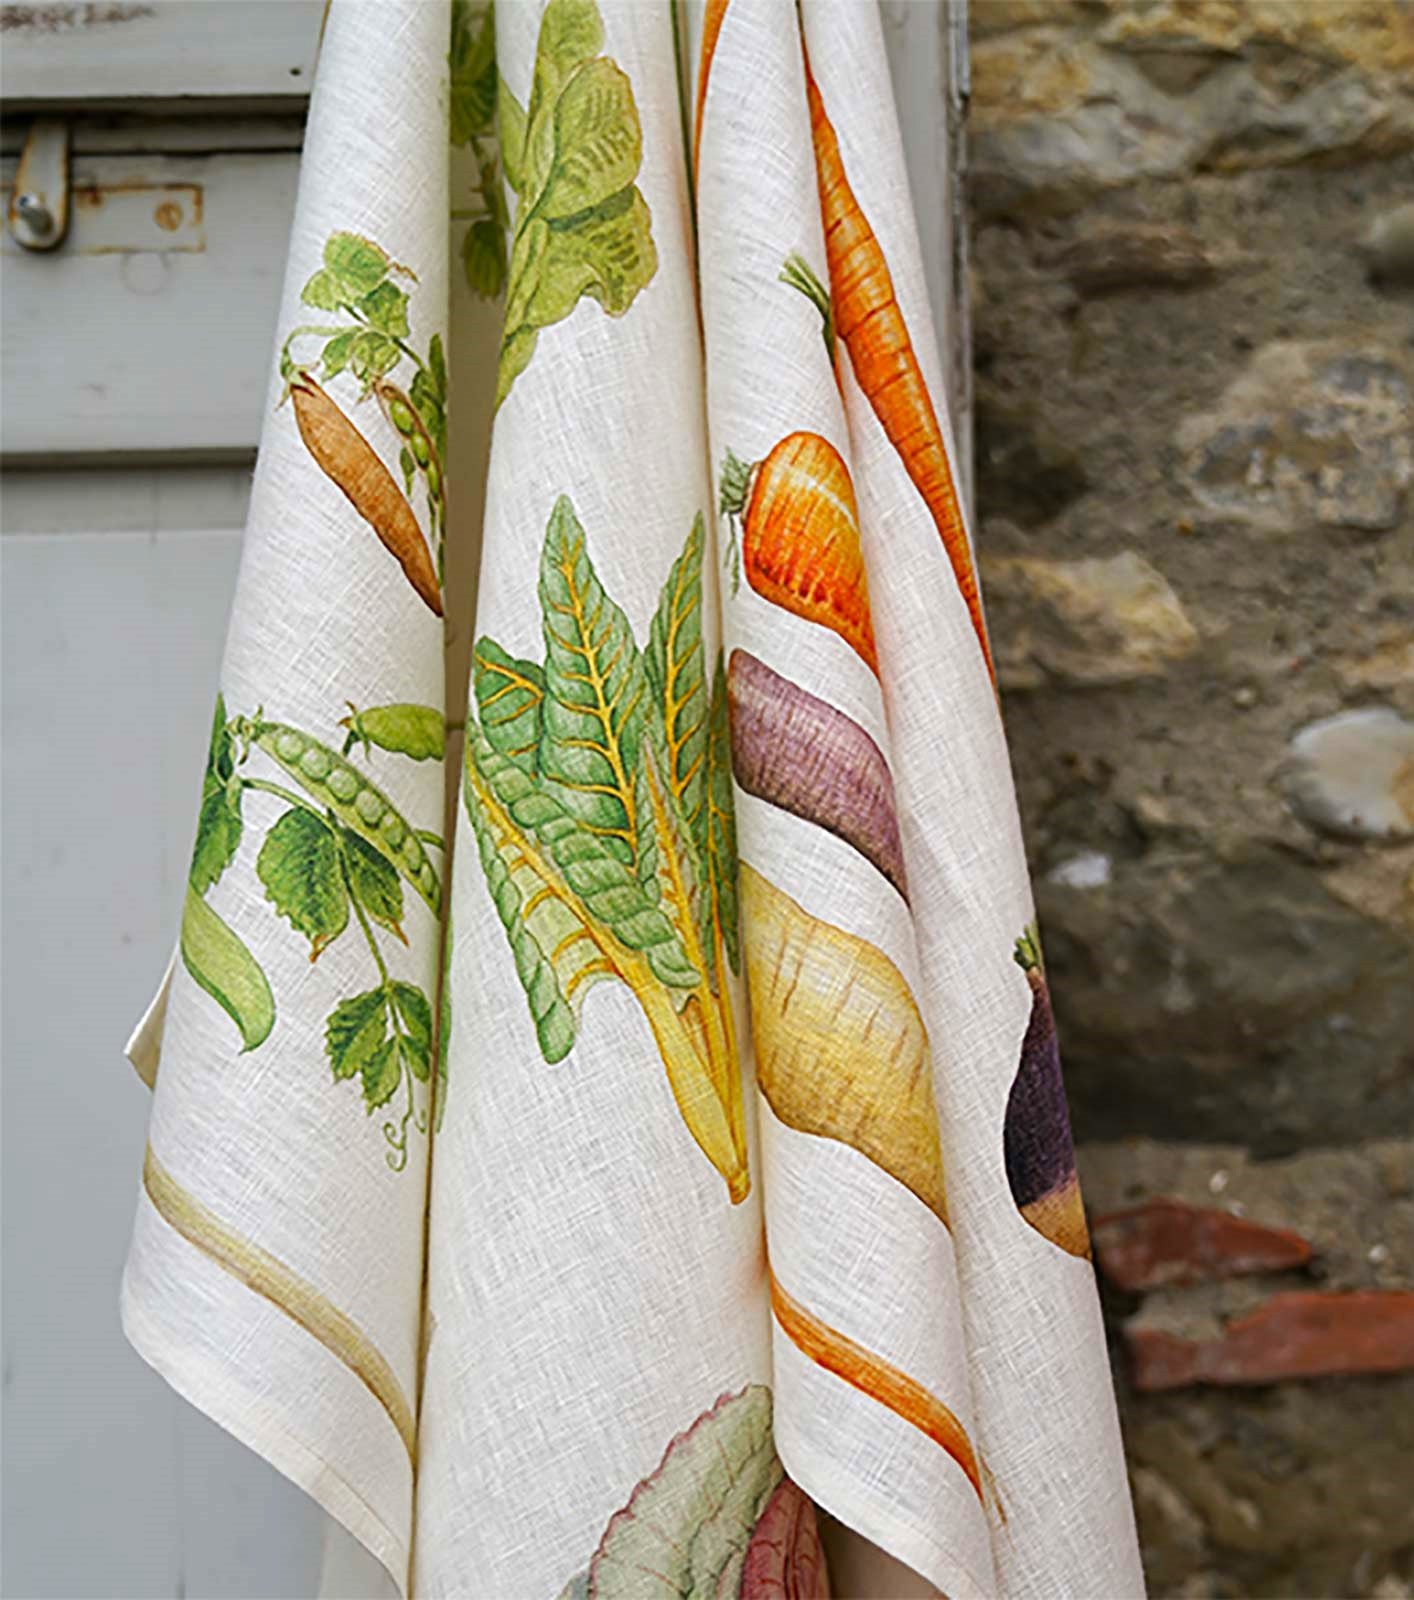 I LOVE GREENS European Linen Dish Towels - Exclusive Designs Tea